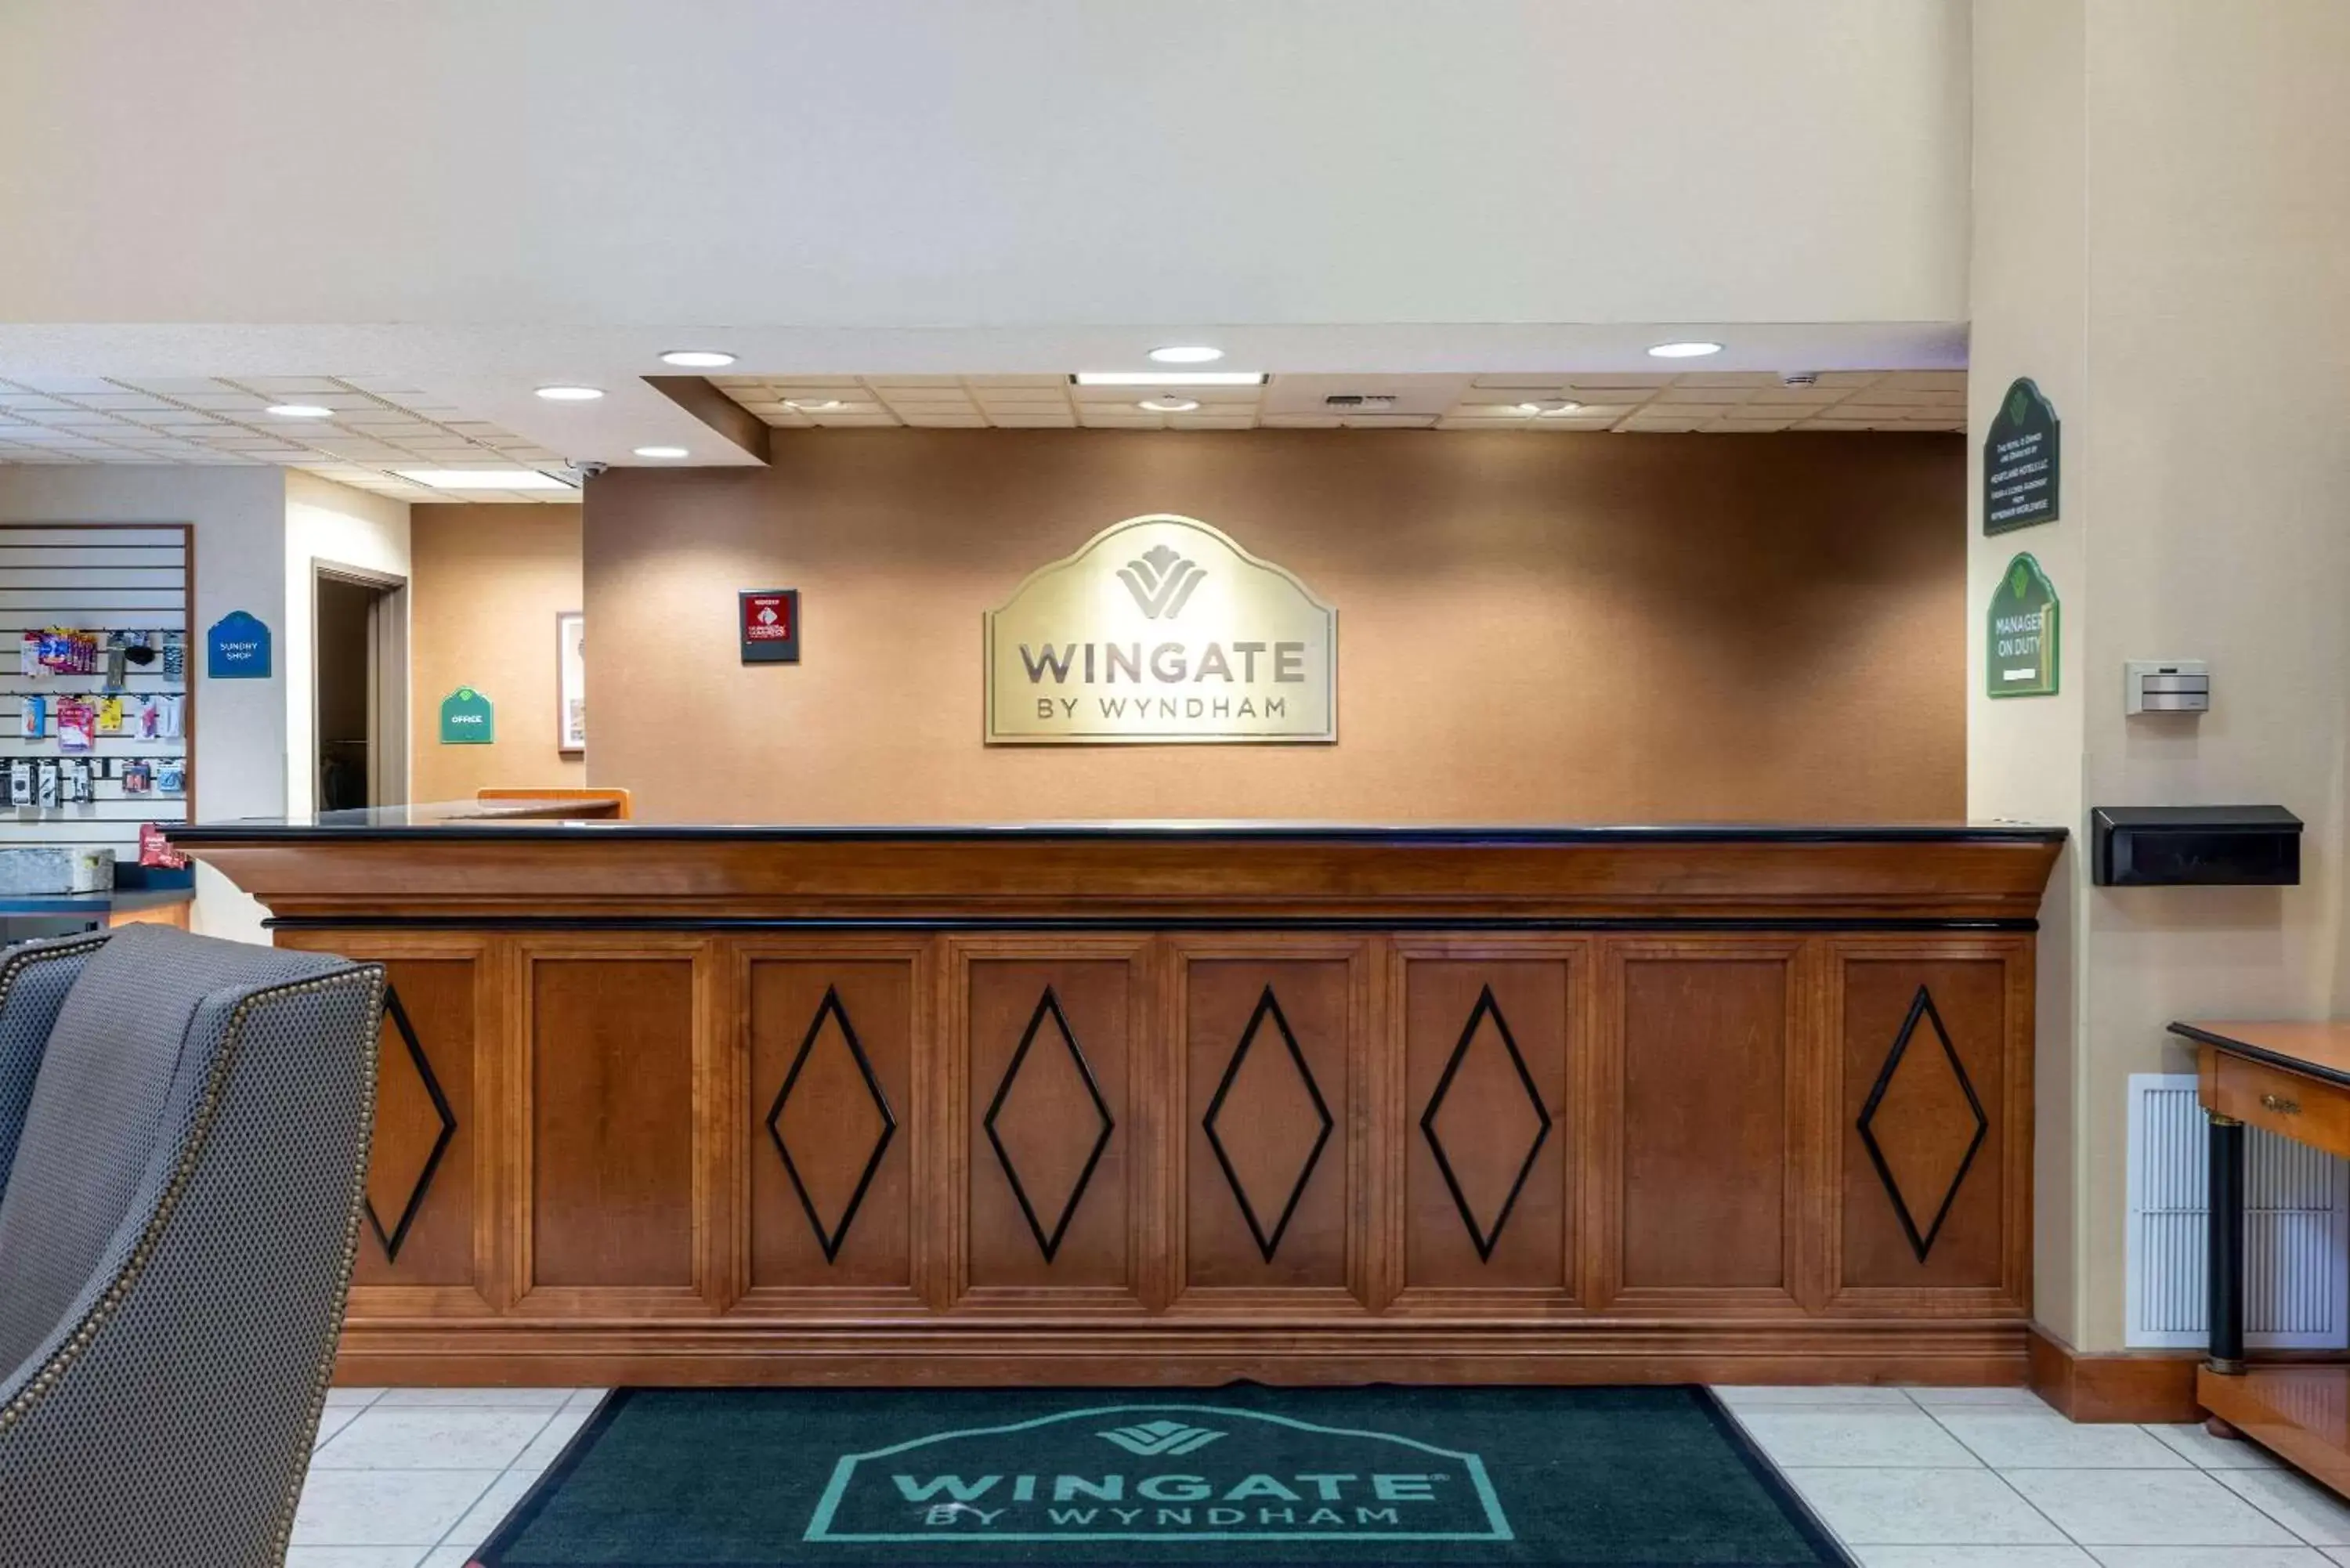 Lobby or reception, Lobby/Reception in Wingate by Wyndham Gillette near CAM-PLEX